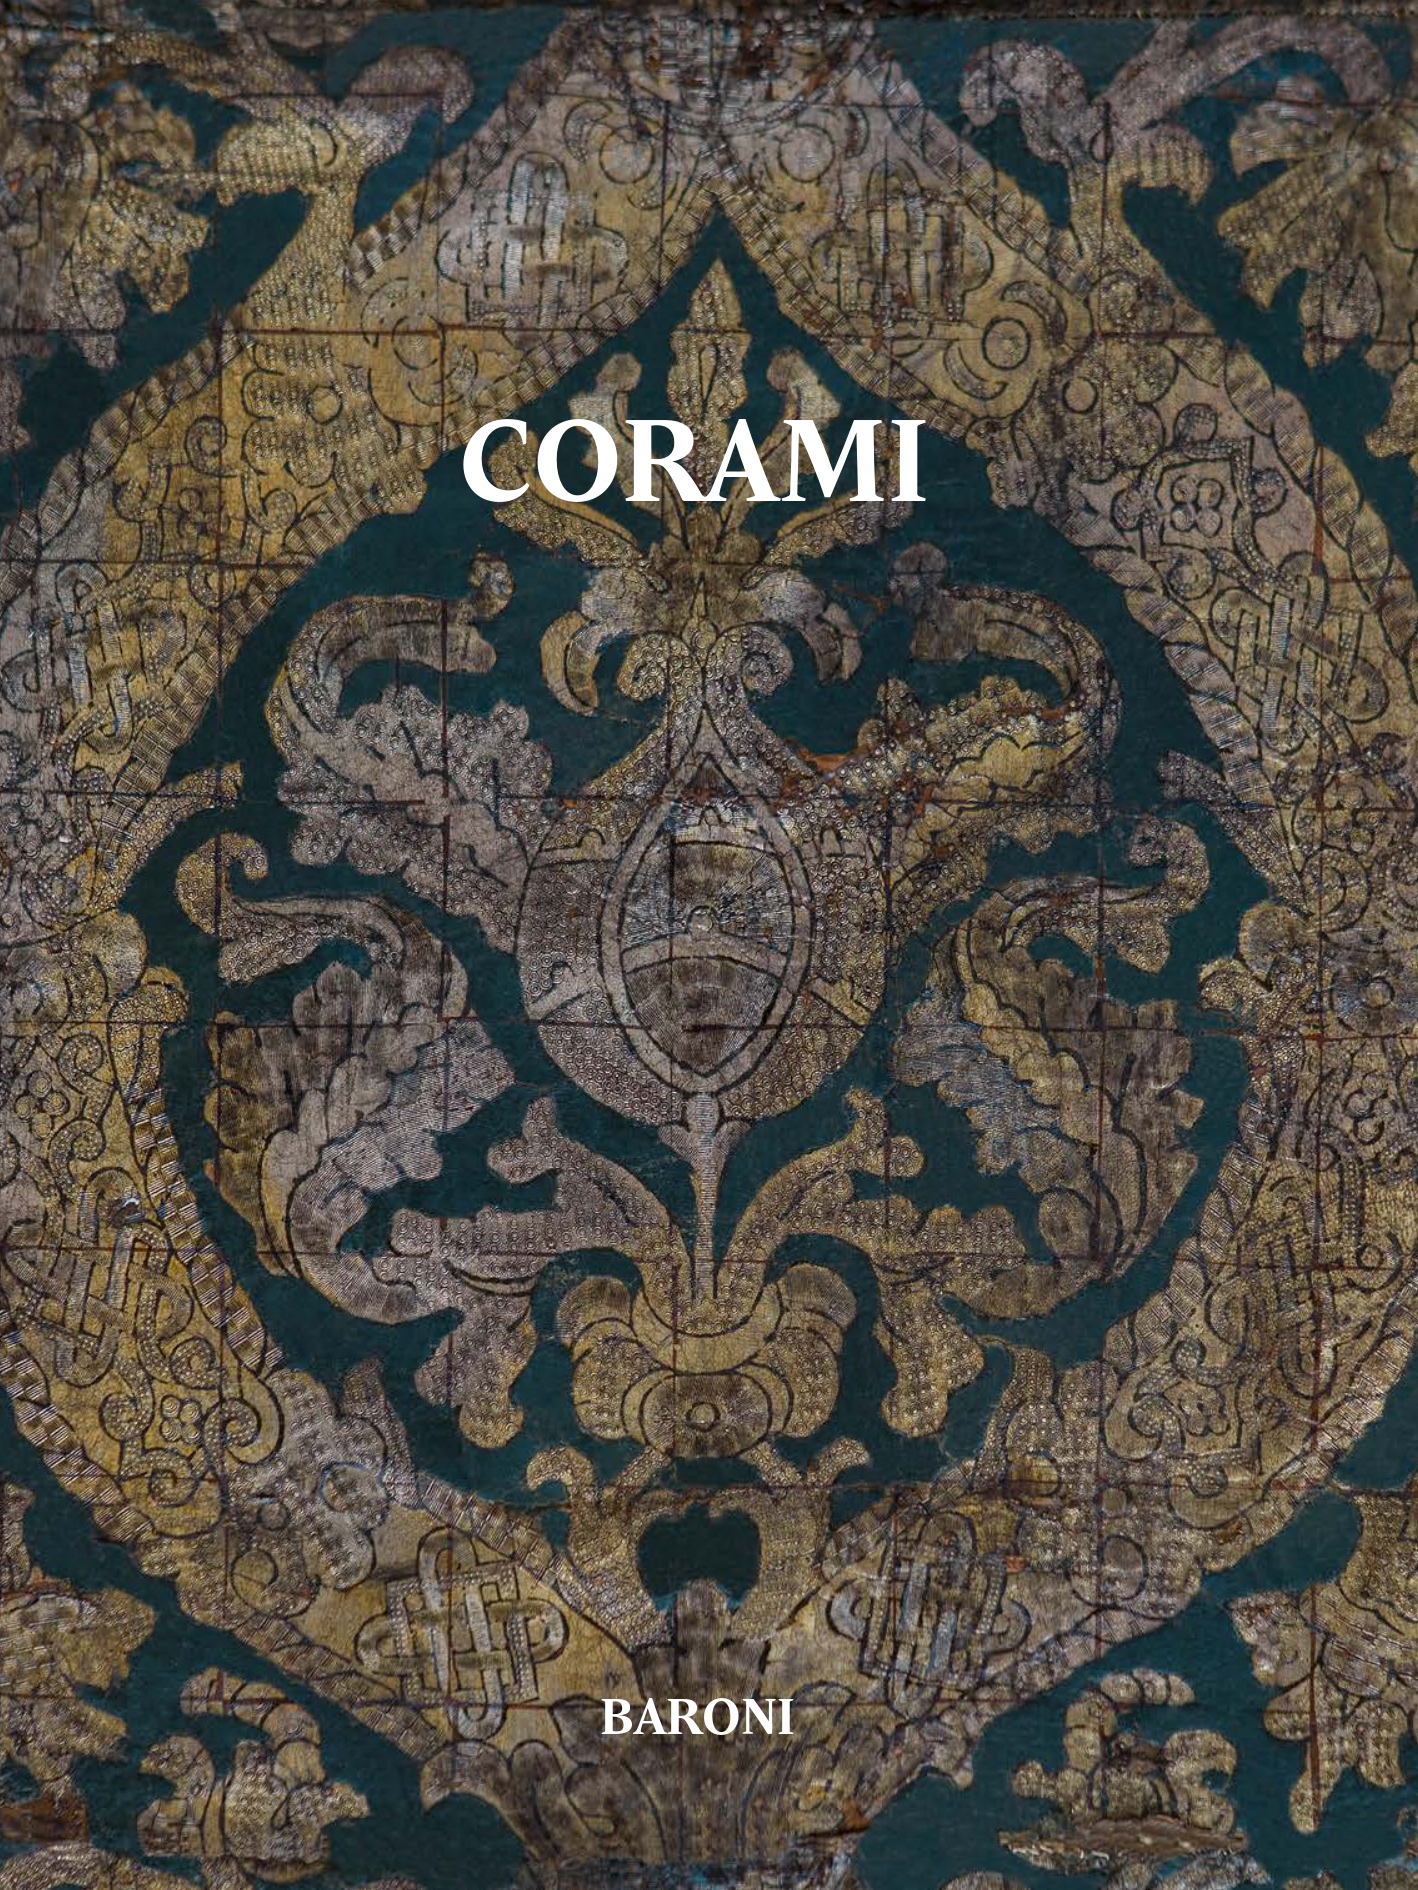 Tomorrow in Te Spazio the presentation of the book “Corami” by Augusto Murari